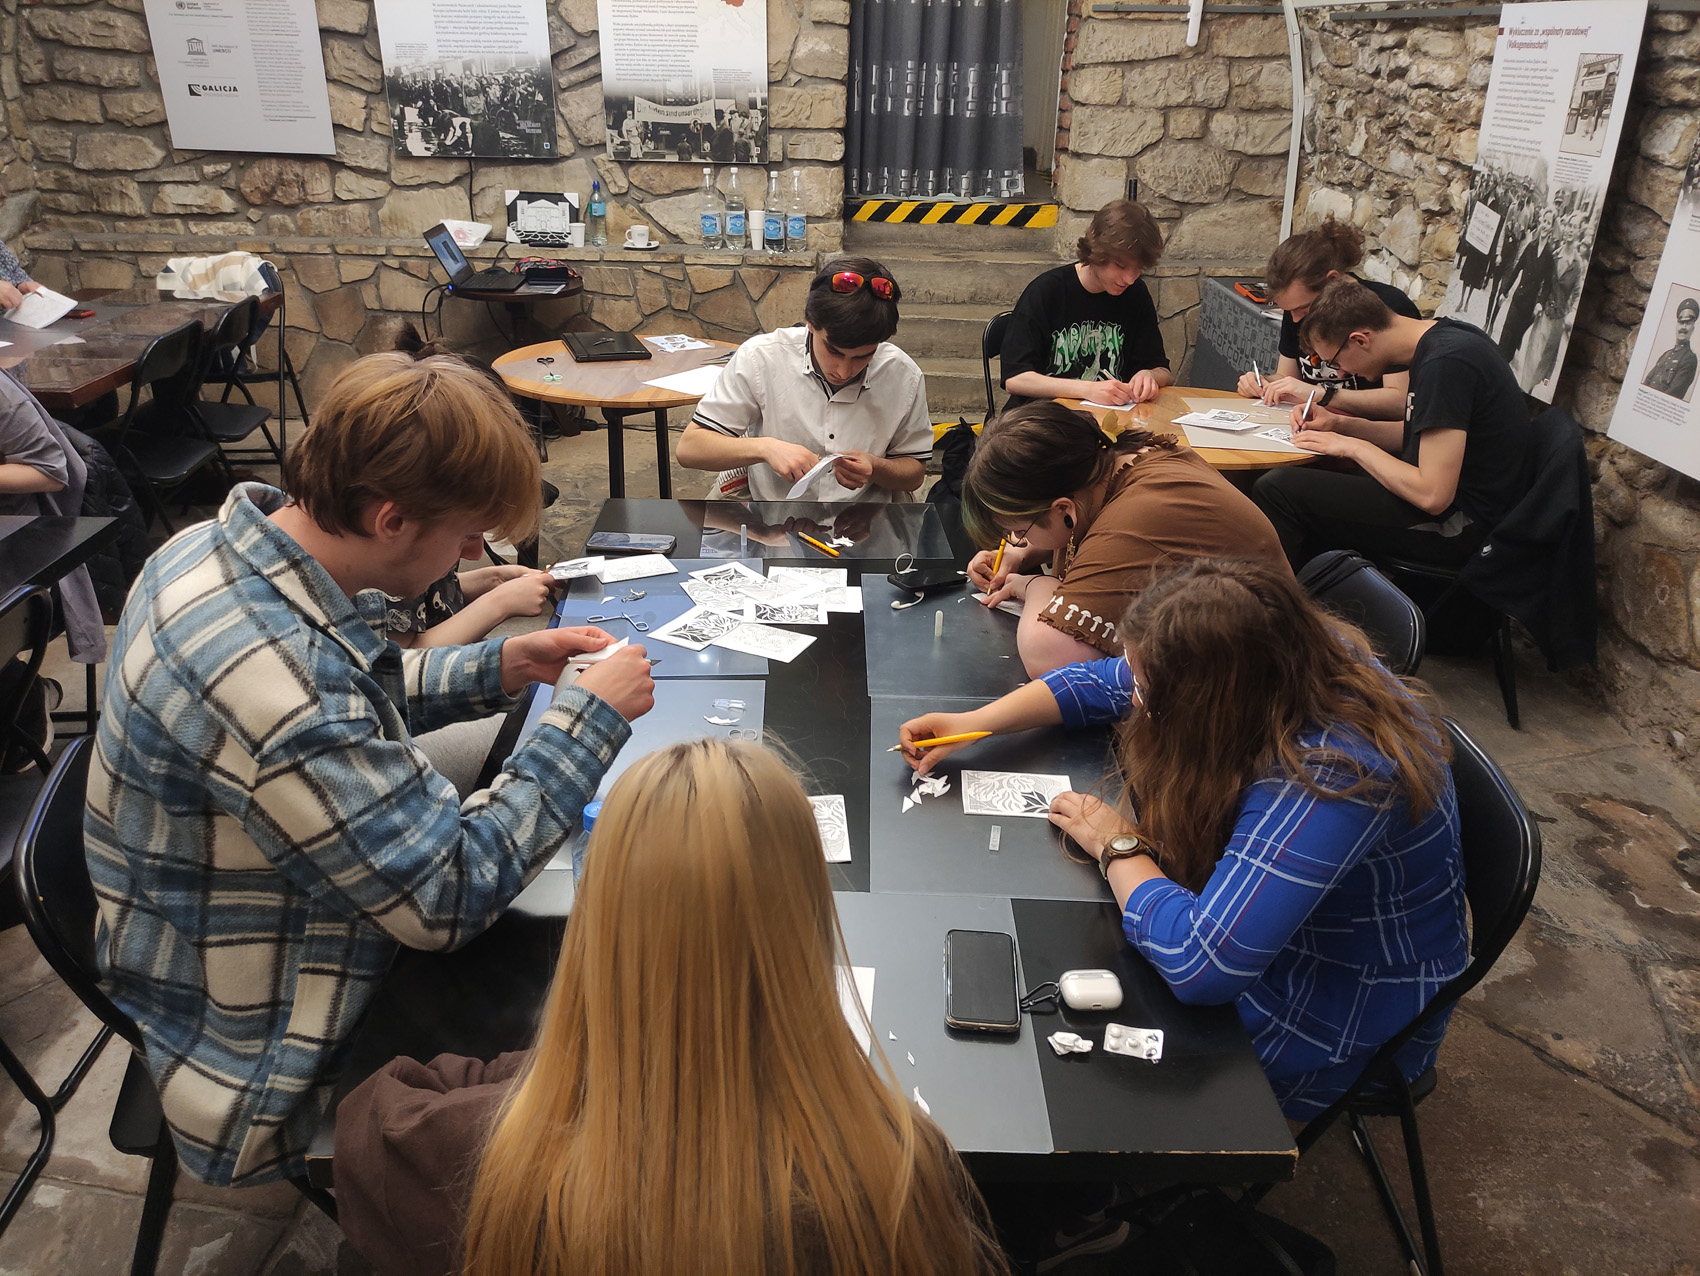 W pomieszczeniu przy stolikach siedzi grupa młodych osób. Na stolikach są rozłożone kartki papieru, nożyki i nożyczki. Siedzące osoby wycinają nożykami wzór na kartce papieru.